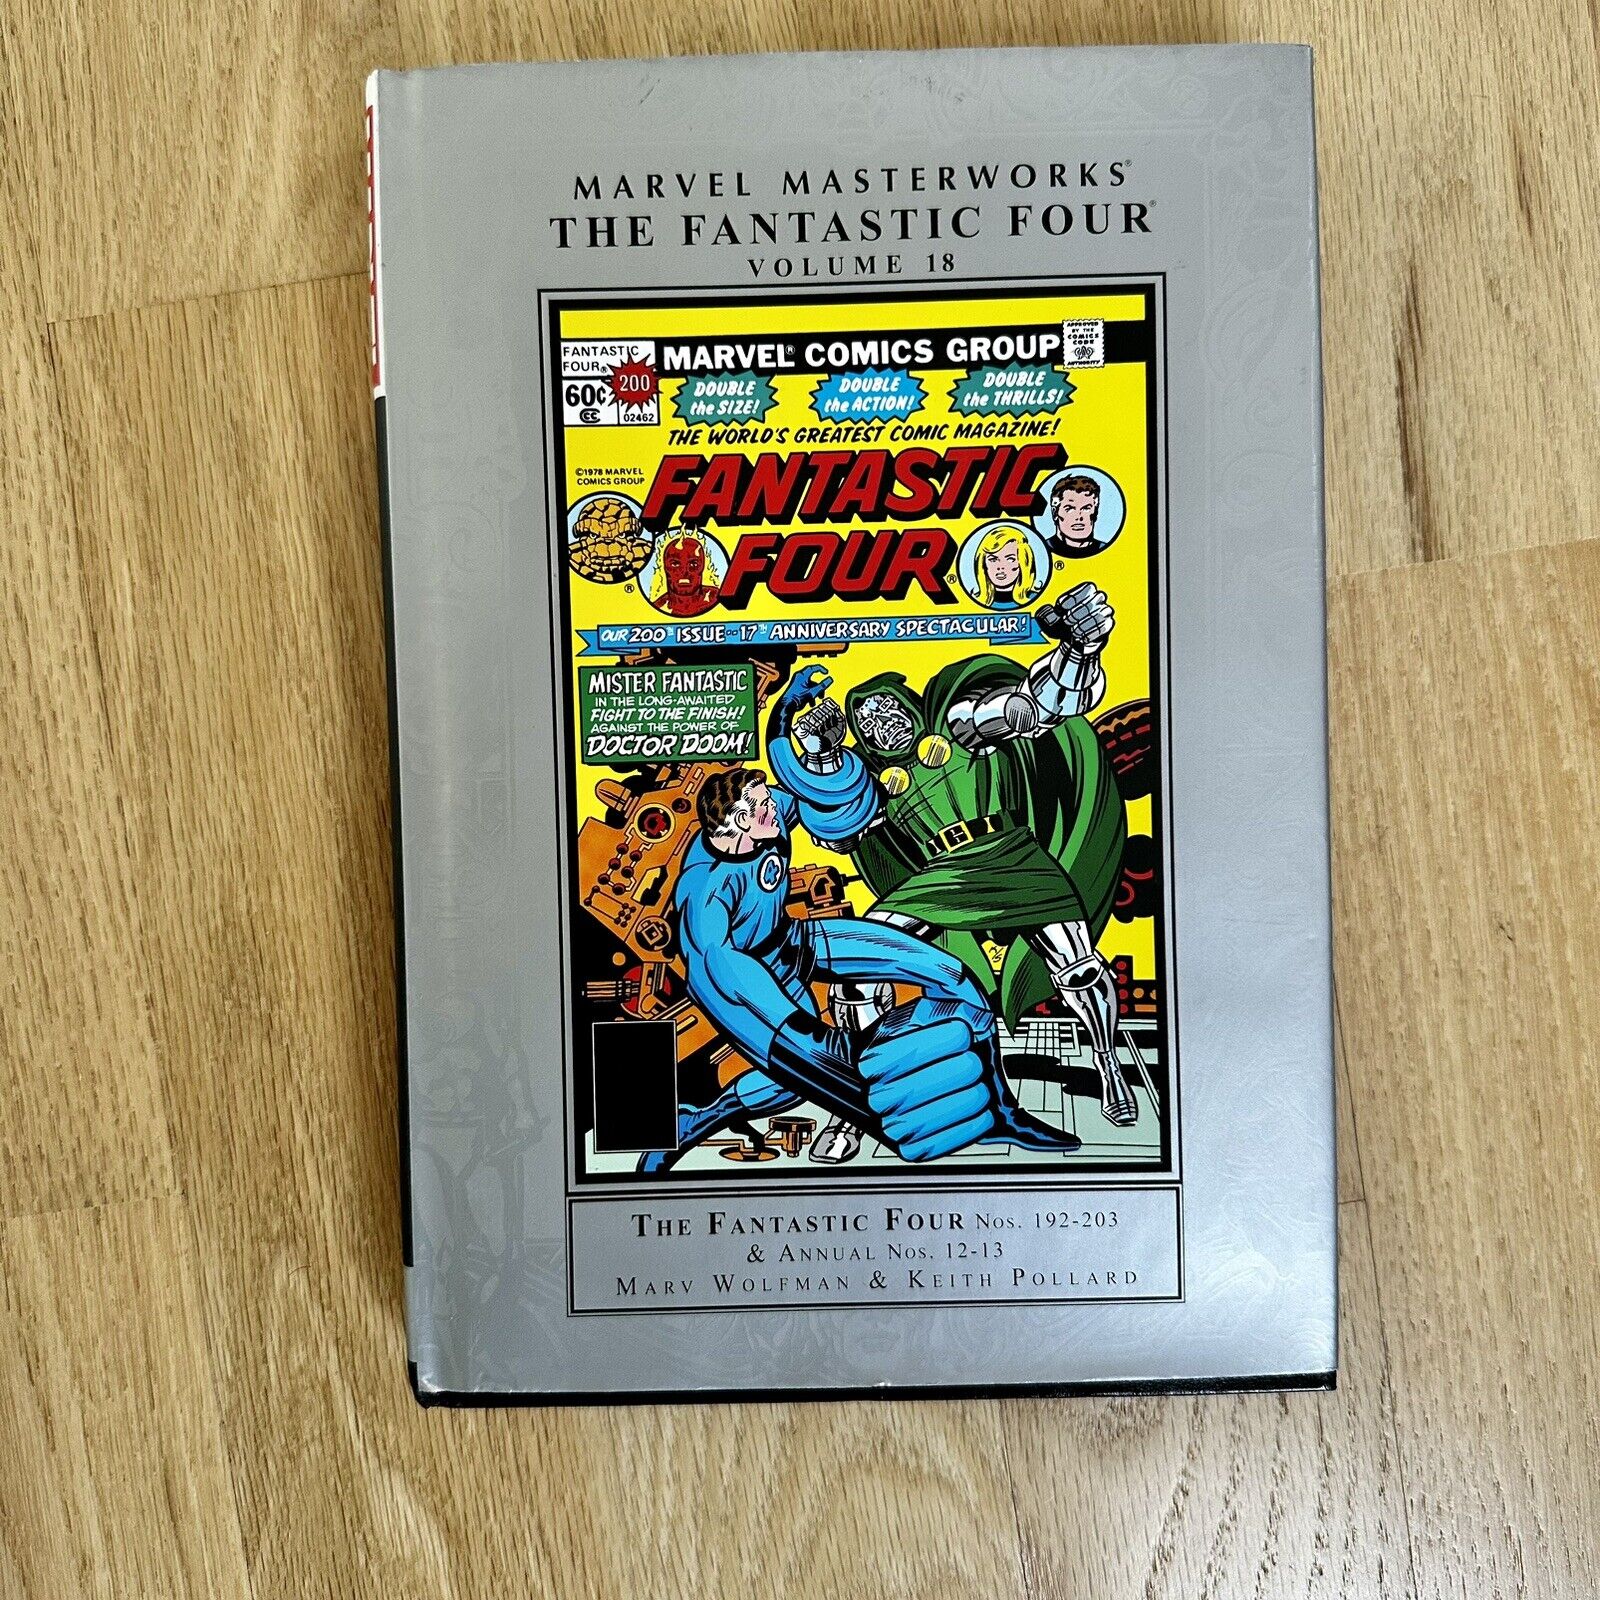 Fantastic Four Marvel Masterworks volume 18